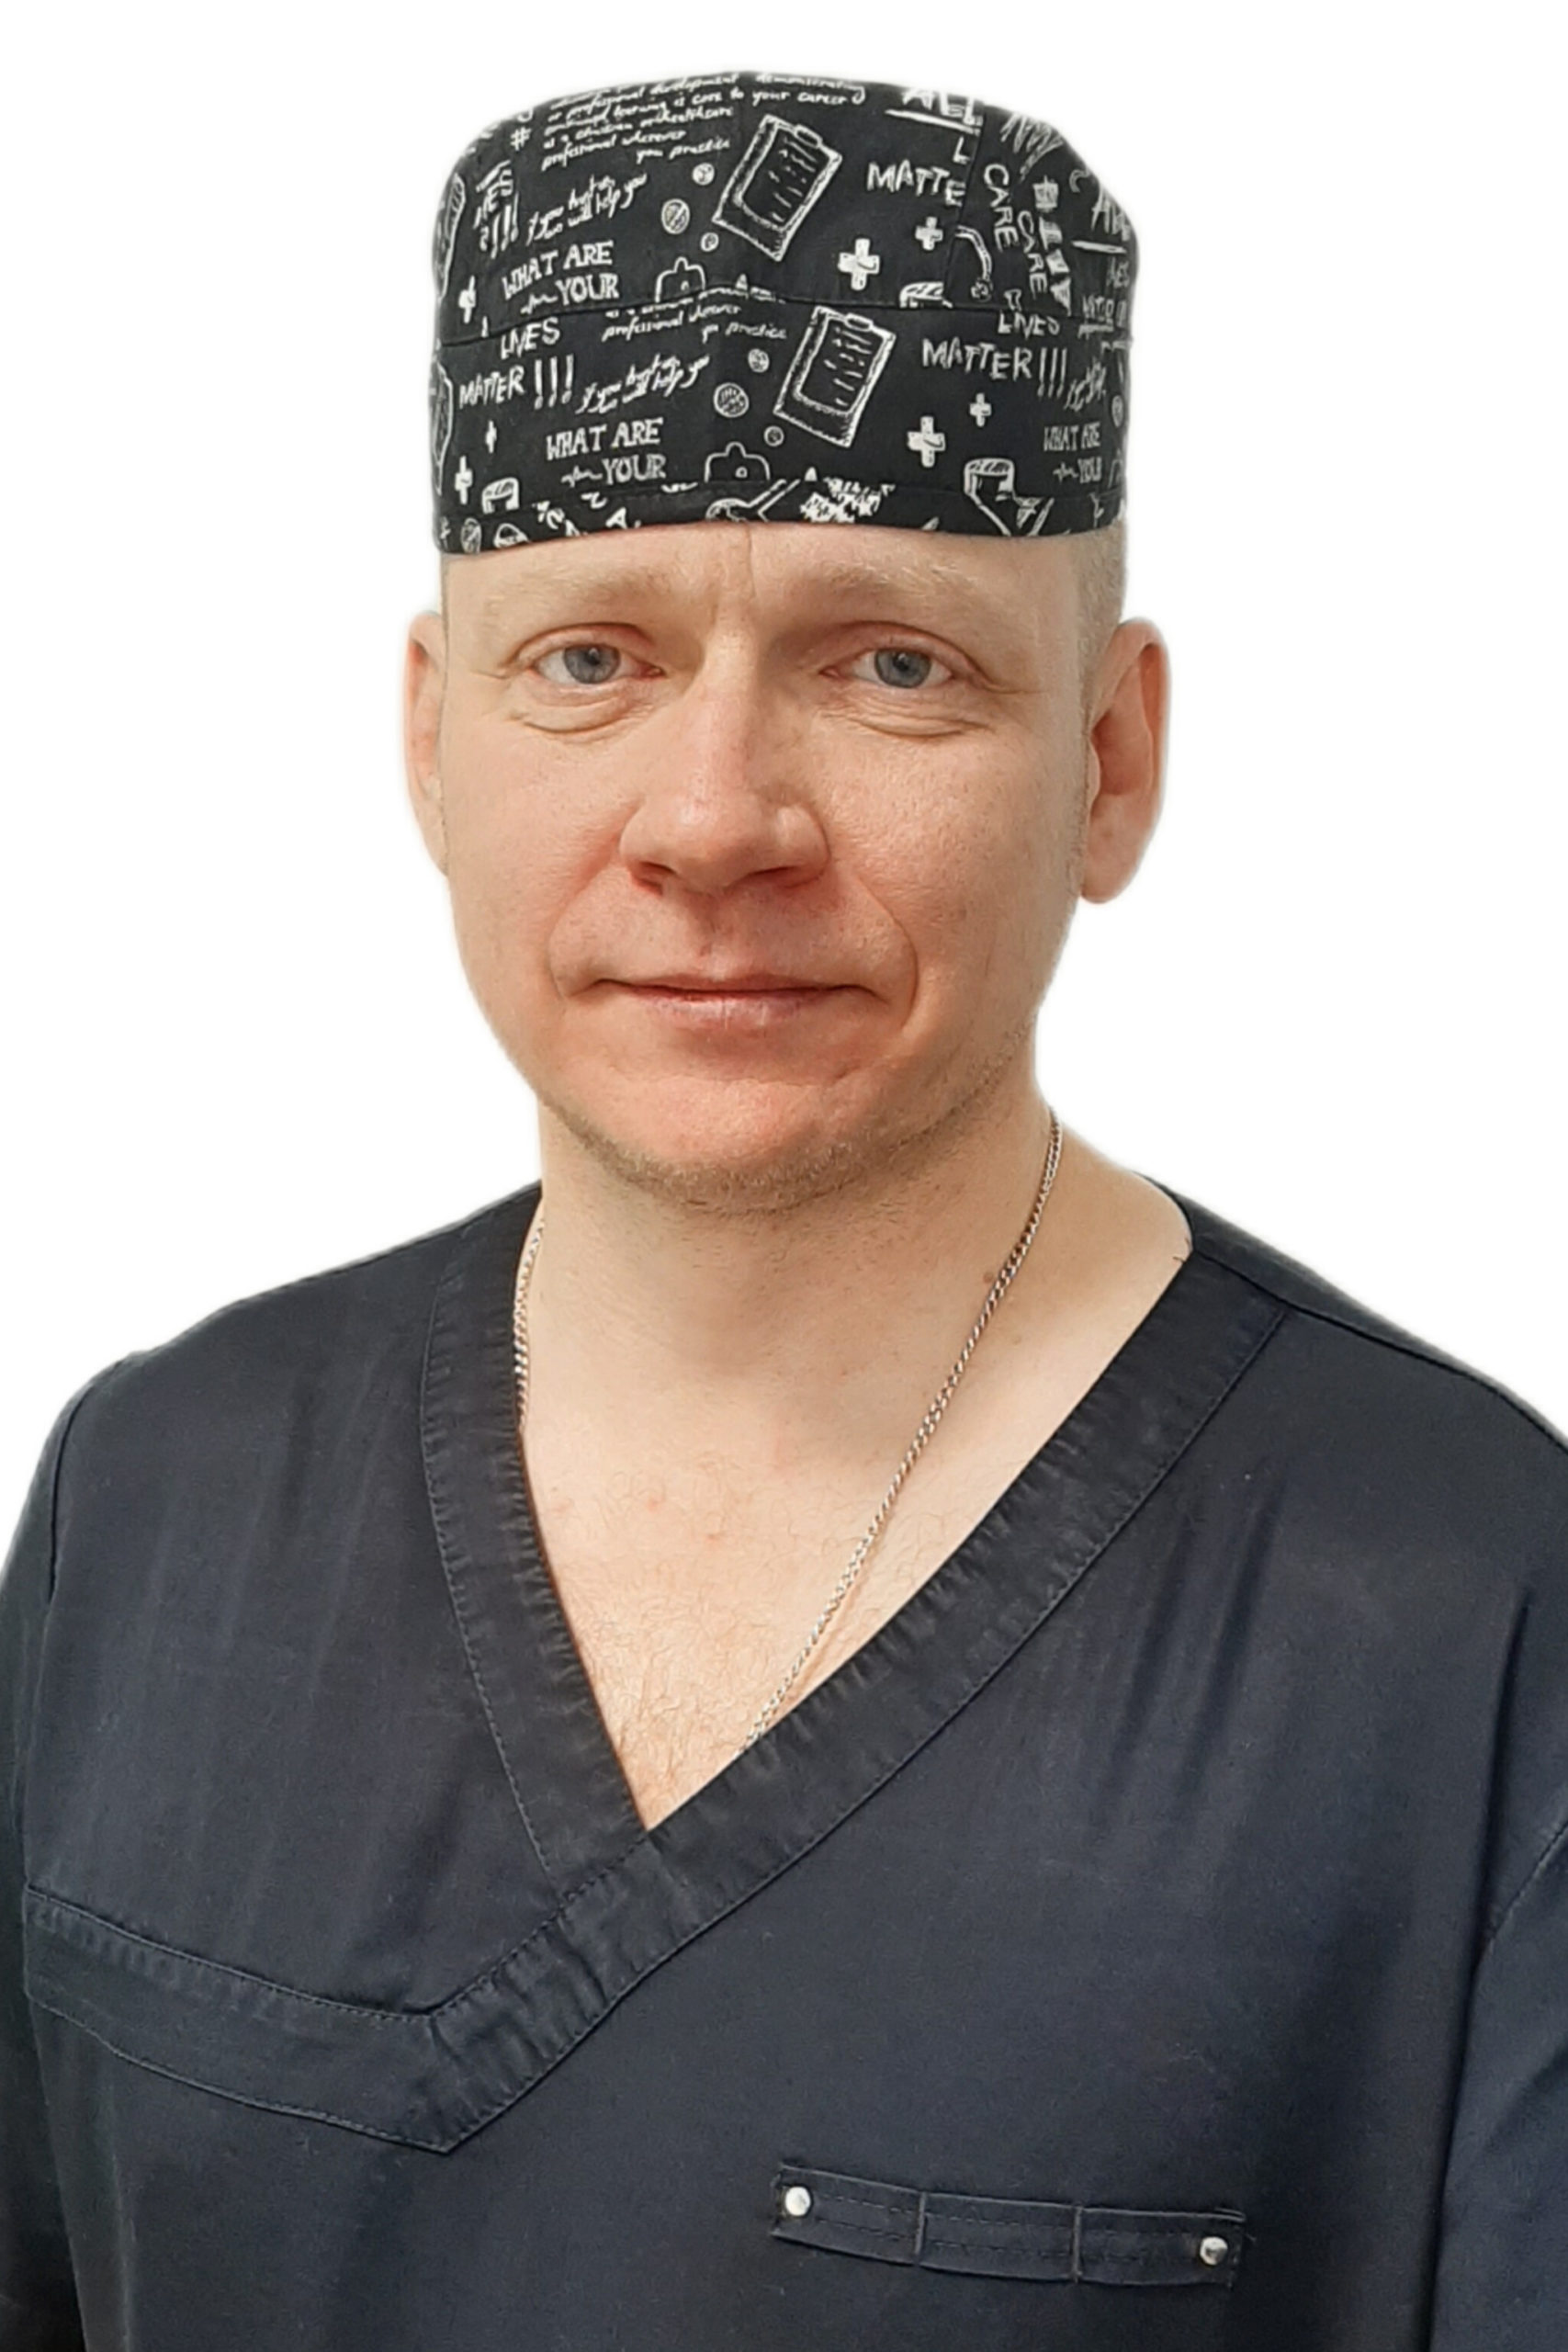 Якимчук Дмитрий Александрович - Врач стоматолог-хирург, имплантолог